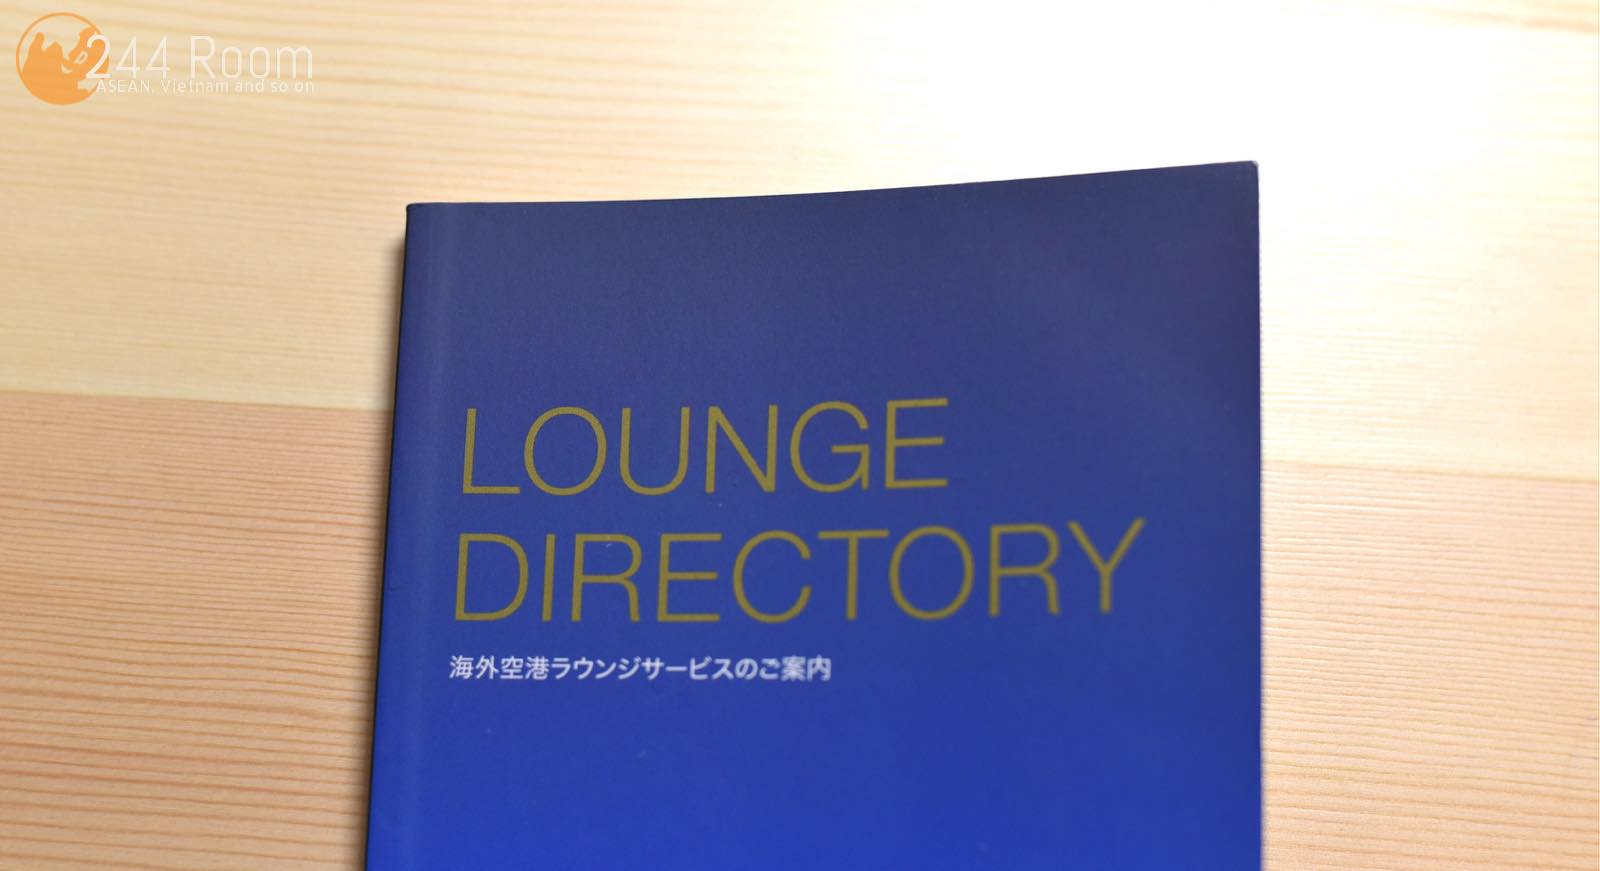 プライオリティパスラウンジディレクトリー Lounge Directory